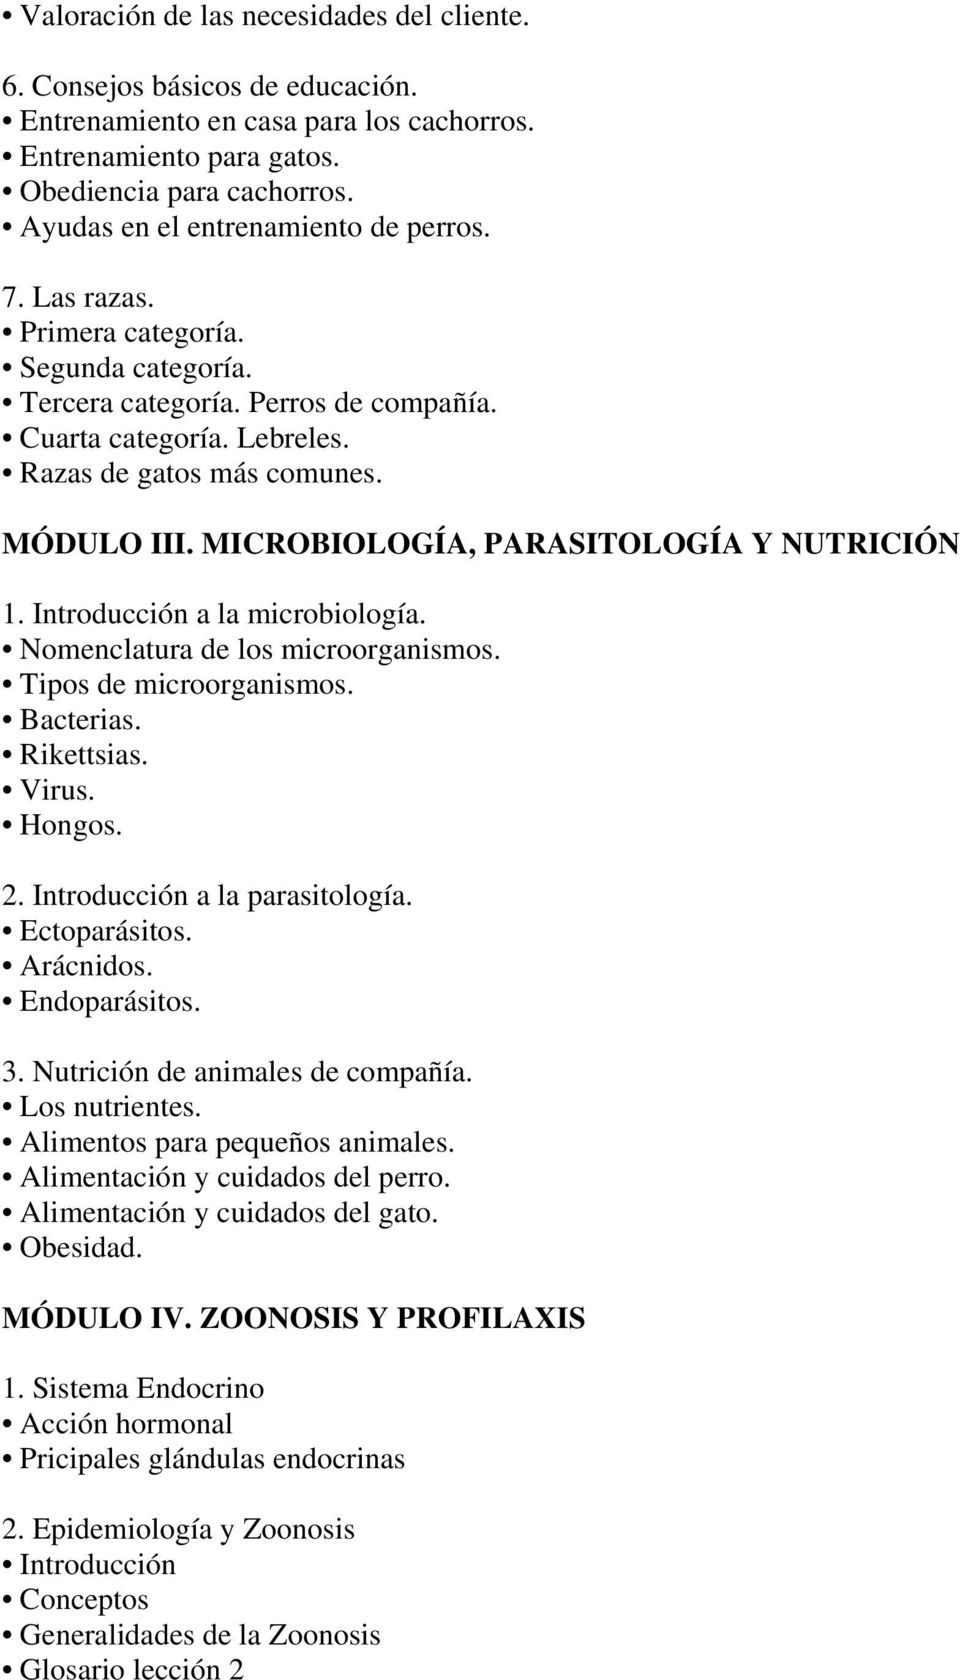 MICROBIOLOGÍA, PARASITOLOGÍA Y NUTRICIÓN 1. Introducción a la microbiología. Nomenclatura de los microorganismos. Tipos de microorganismos. Bacterias. Rikettsias. Virus. Hongos. 2.